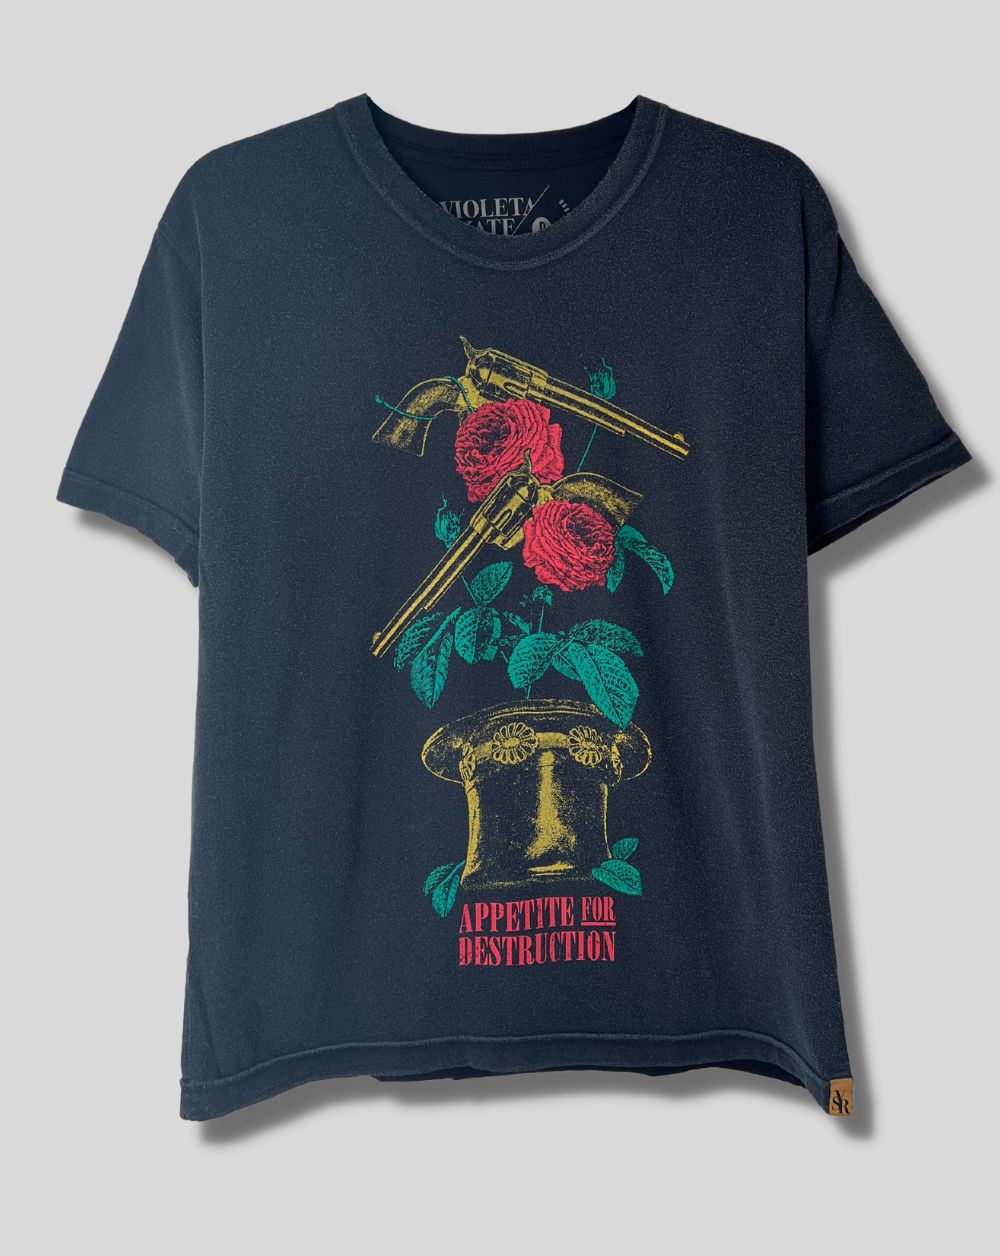 Camiseta Appetite for destruction (Guns 'N Roses)